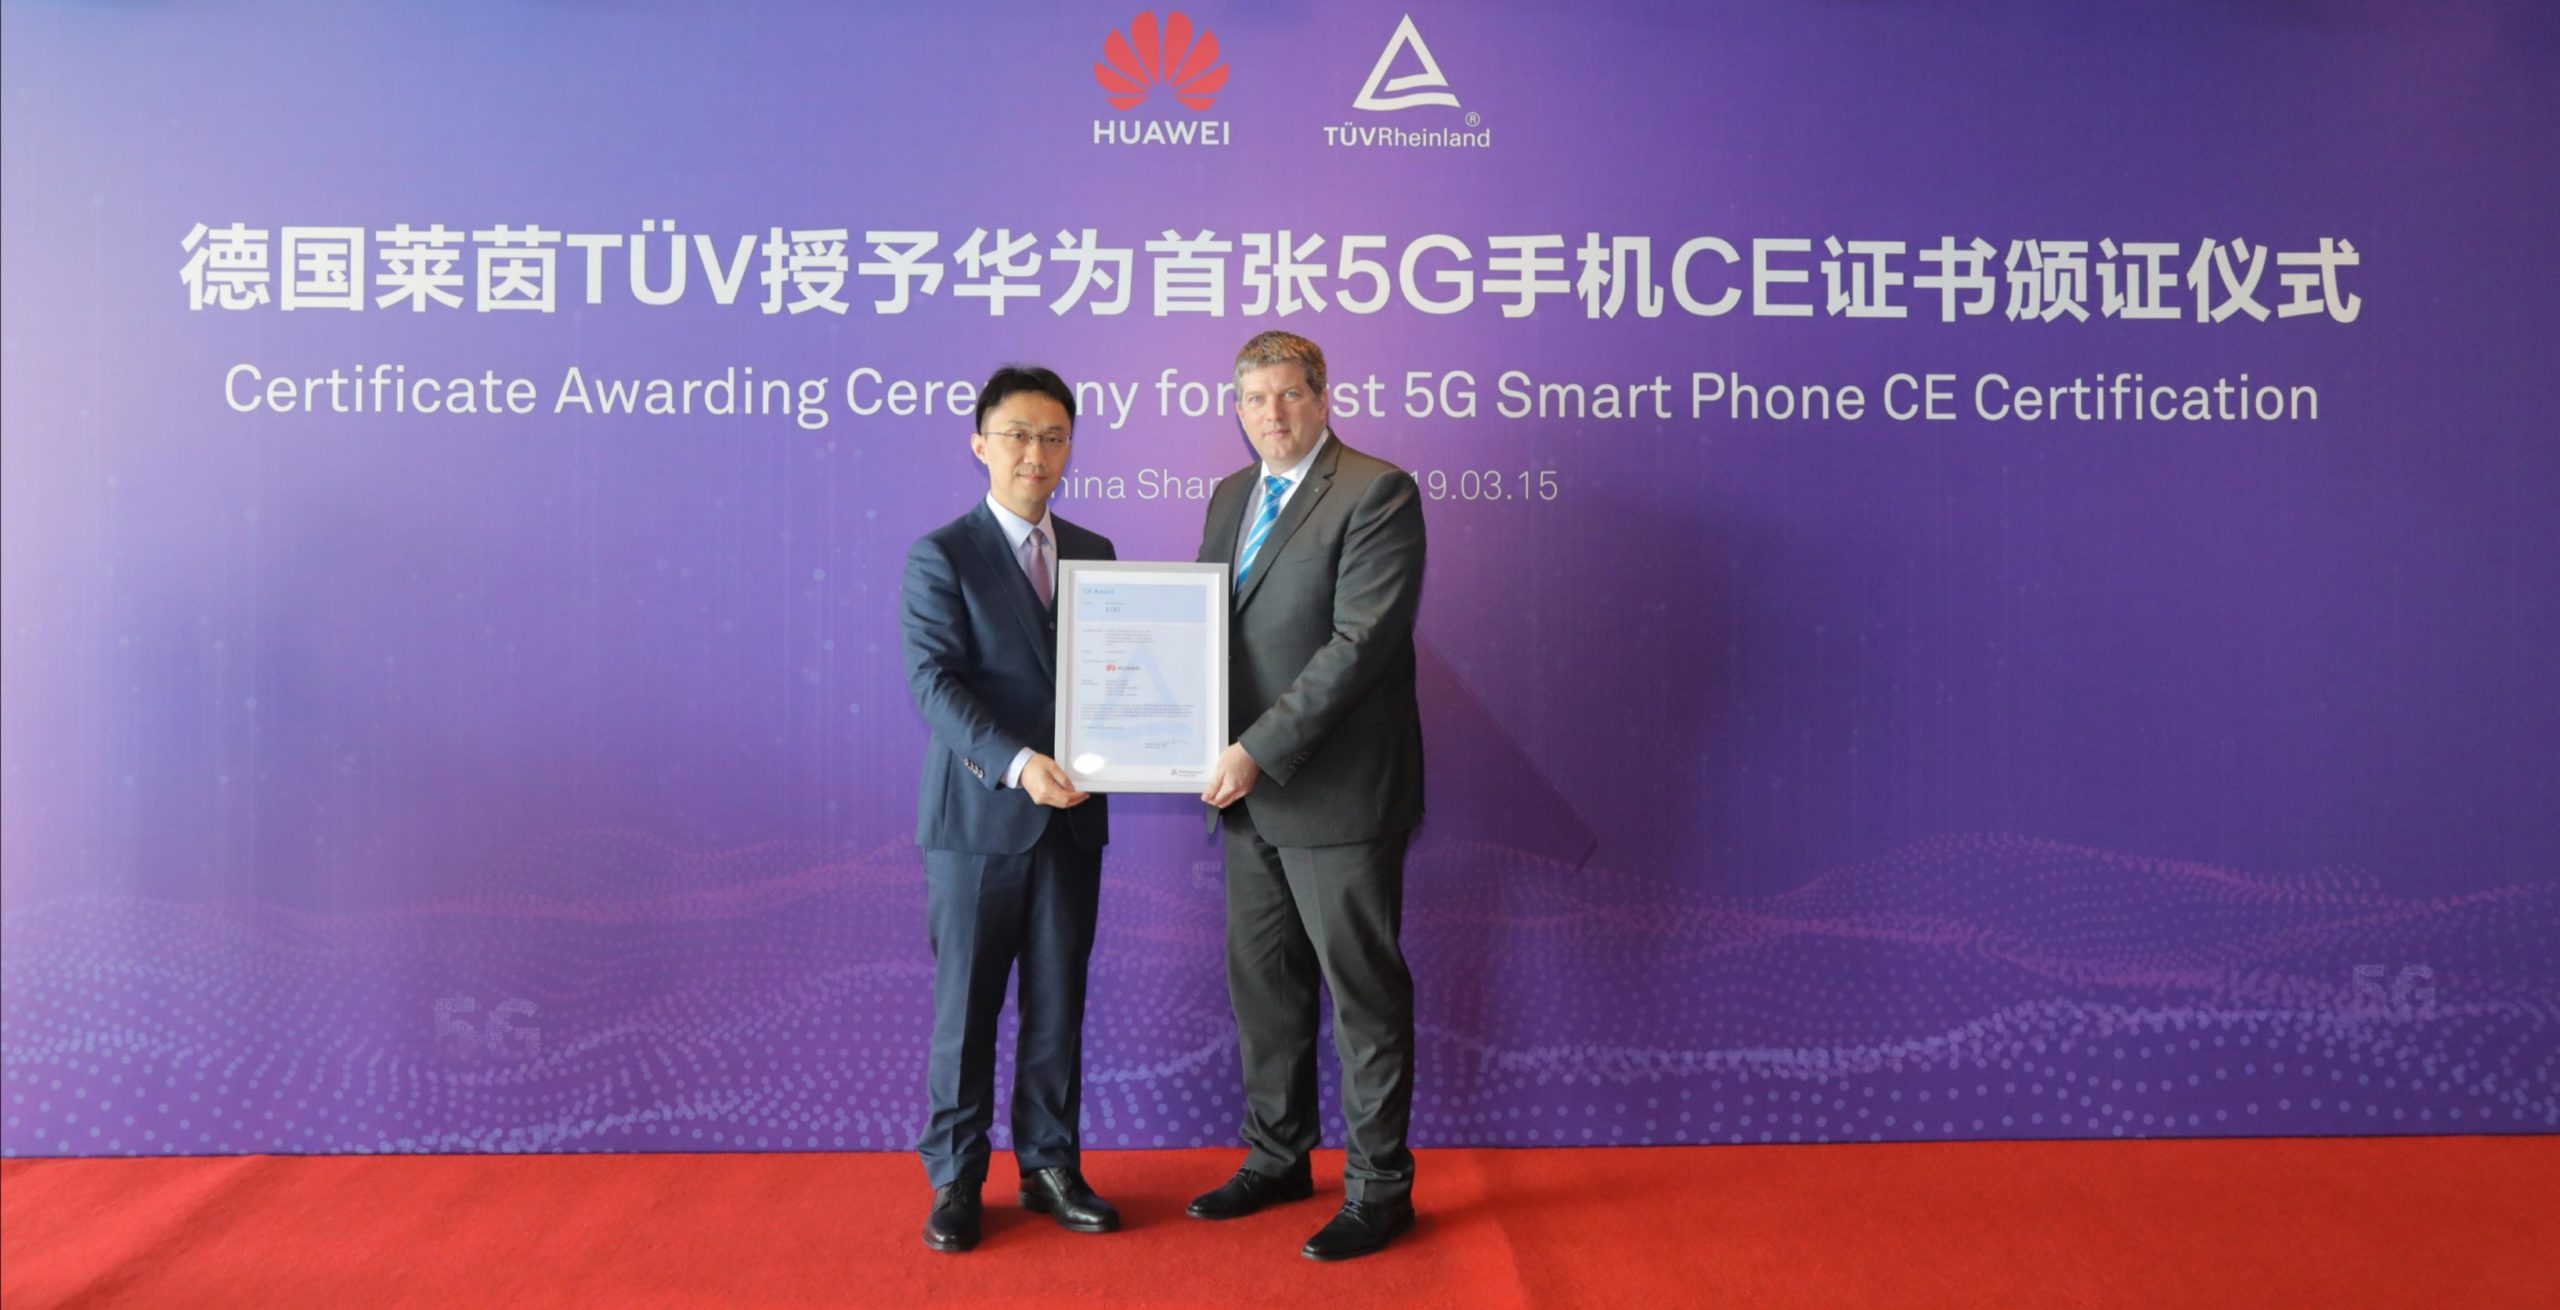 Huawei's Bruce Lee ontvangt het 5G CE-certificaat van TUV Rheinland